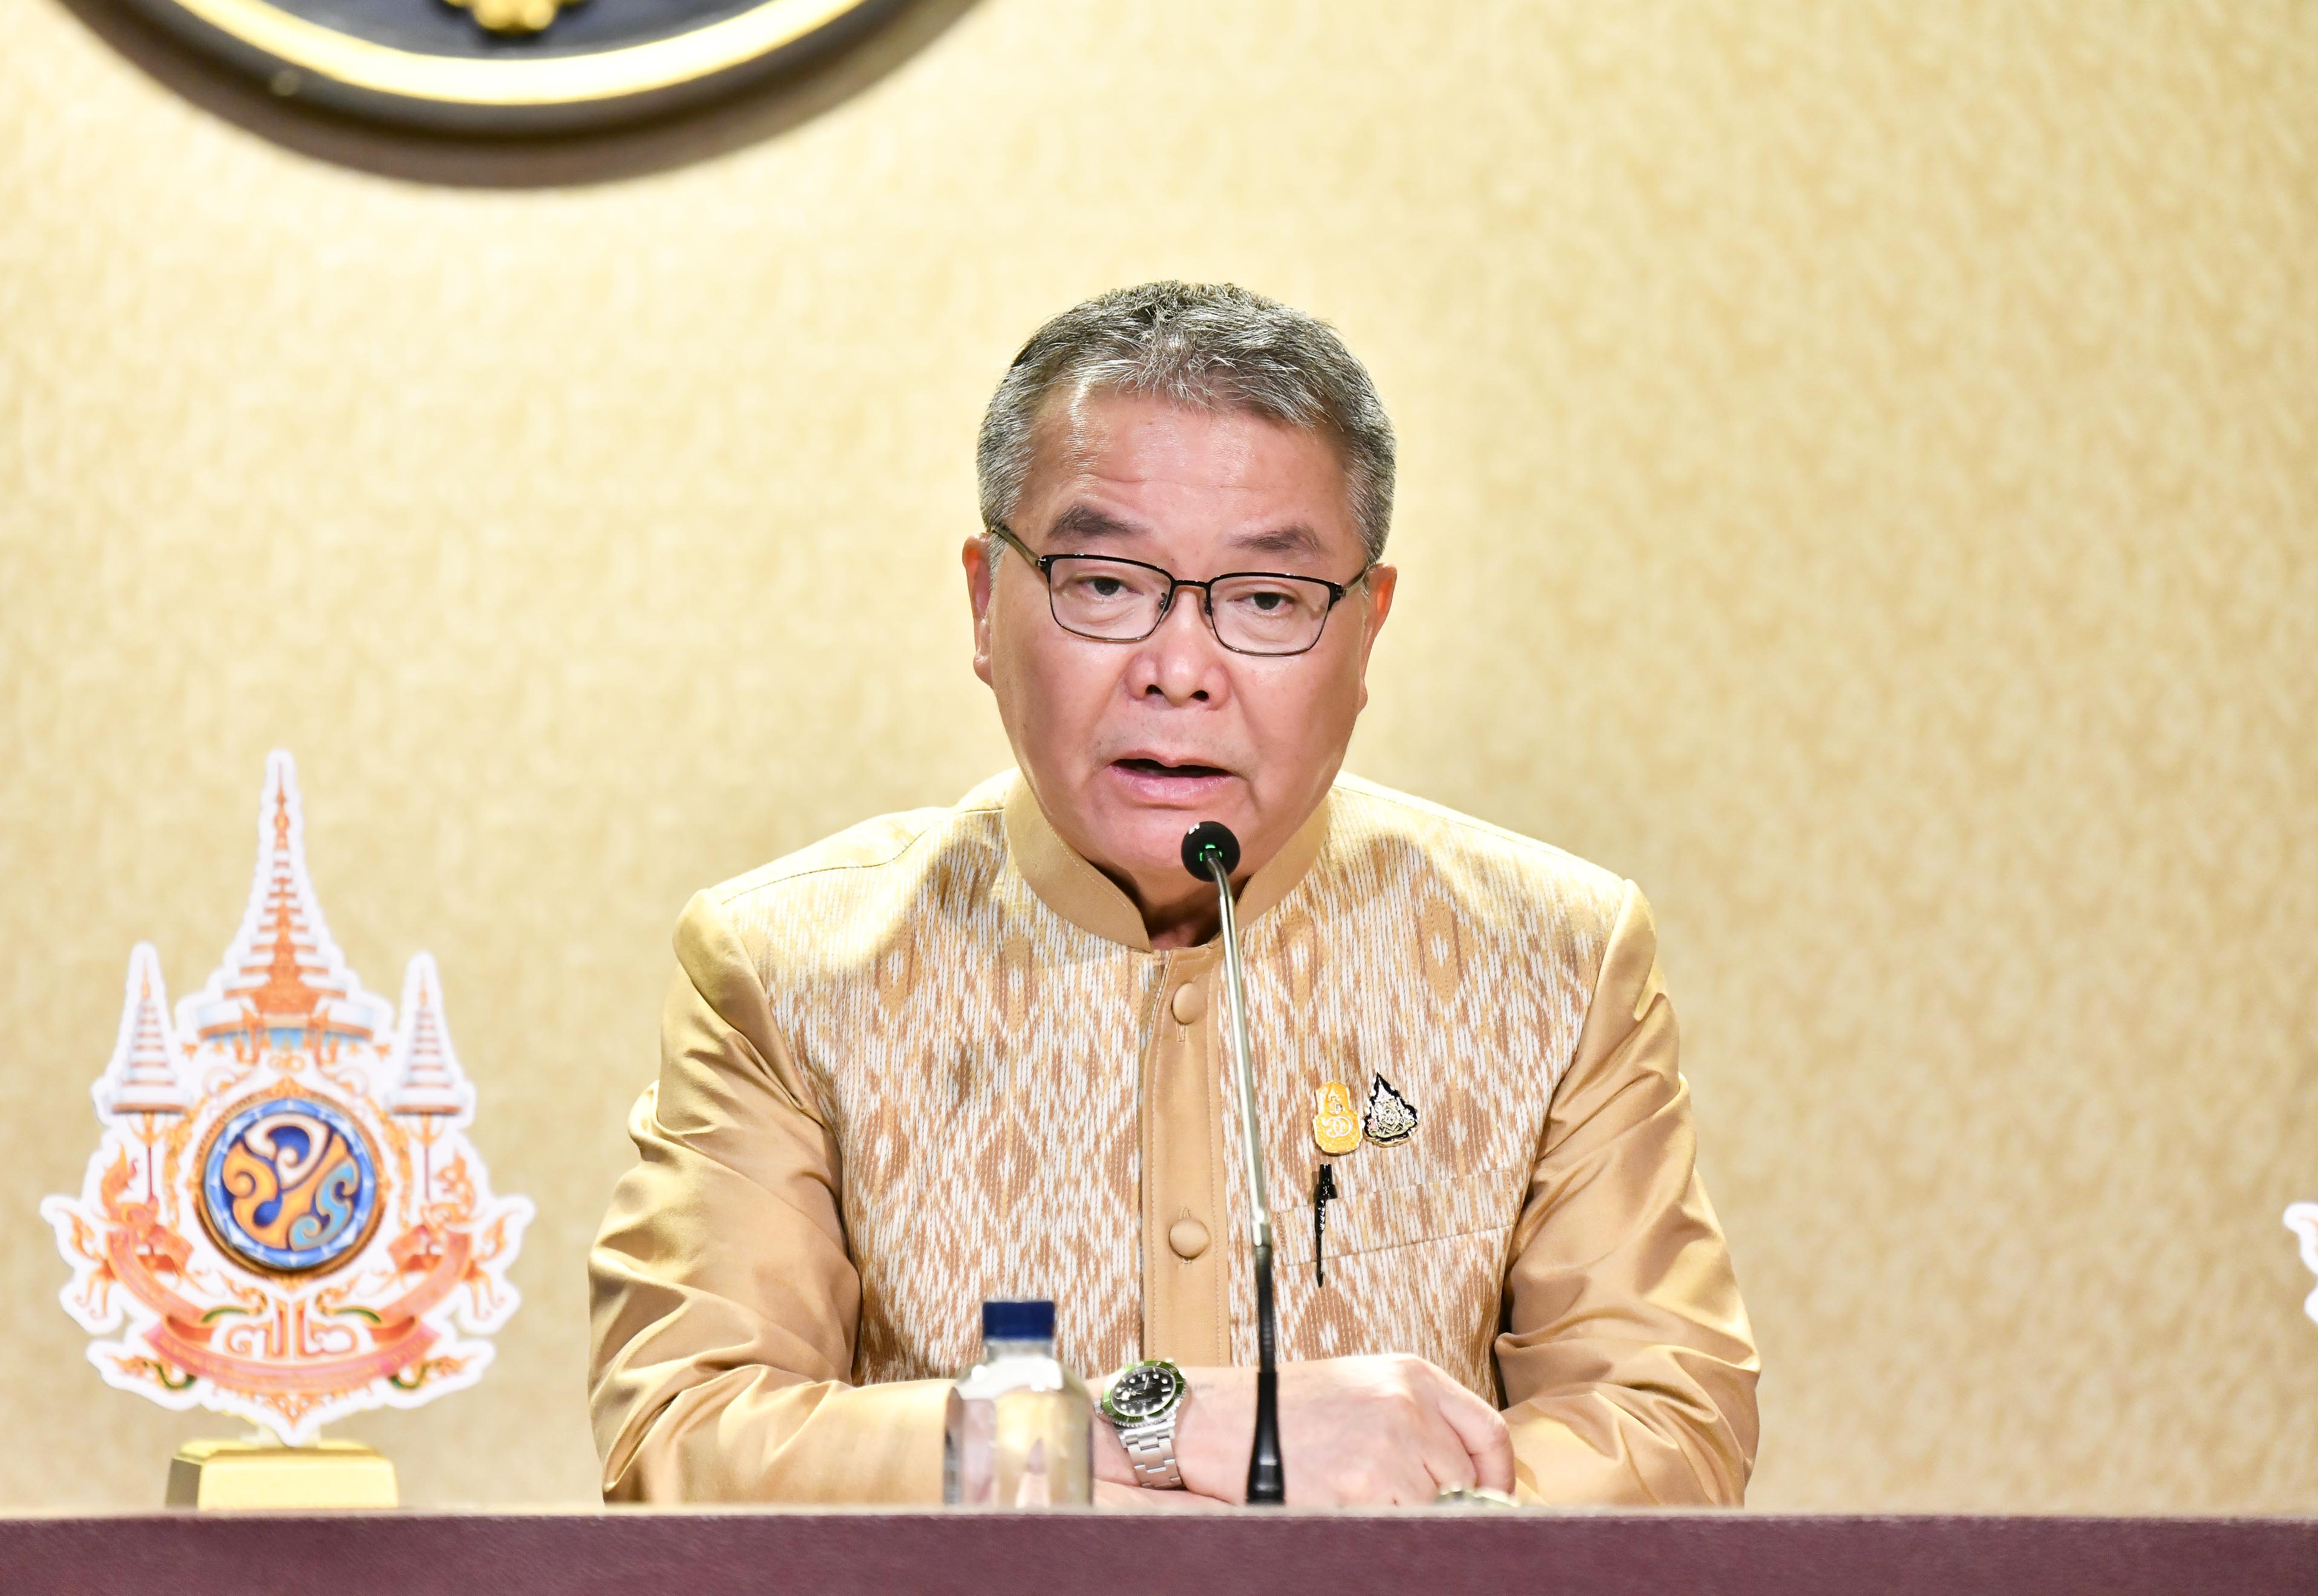  นายกฯ เตรียมให้การต้อนรับ เชค ฮาซีนา นายกรัฐมนตรีบังกลาเทศ เยือนไทยอย่างเป็นทางการในฐานะแขกของรัฐบาล ระหว่างวันที่ 24 - 29 เมษายน 2567